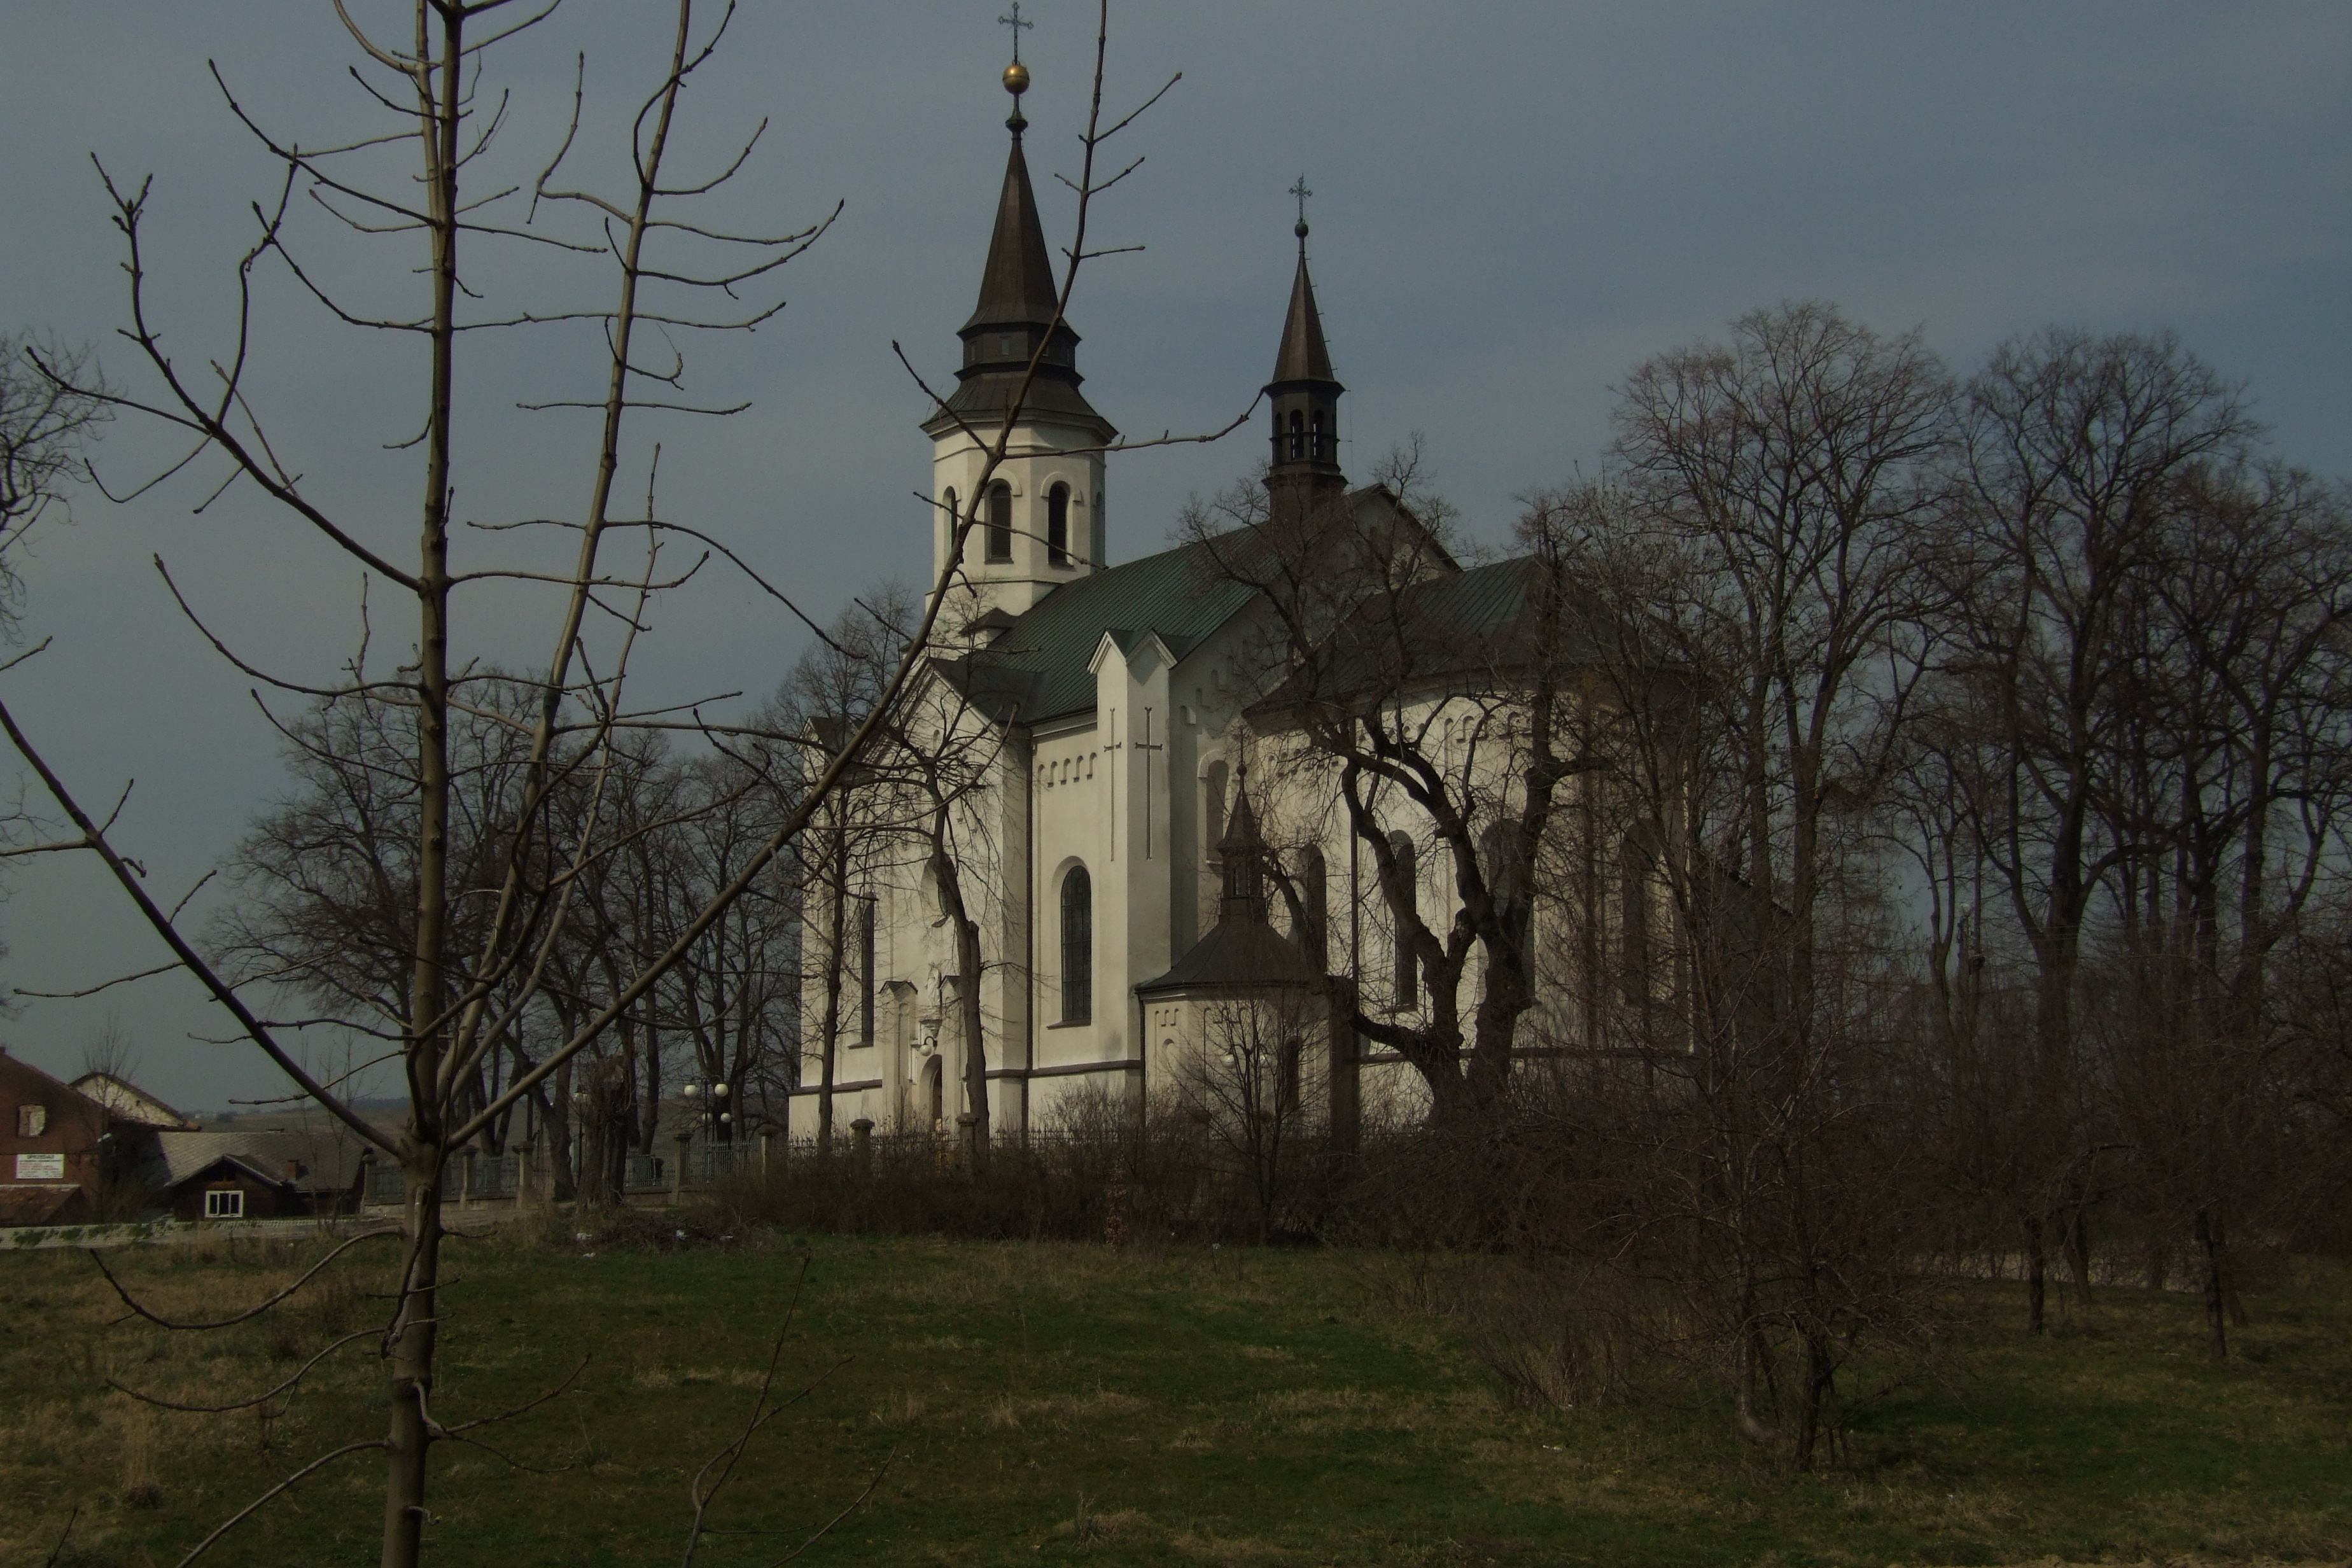 Photograph: Polish Church